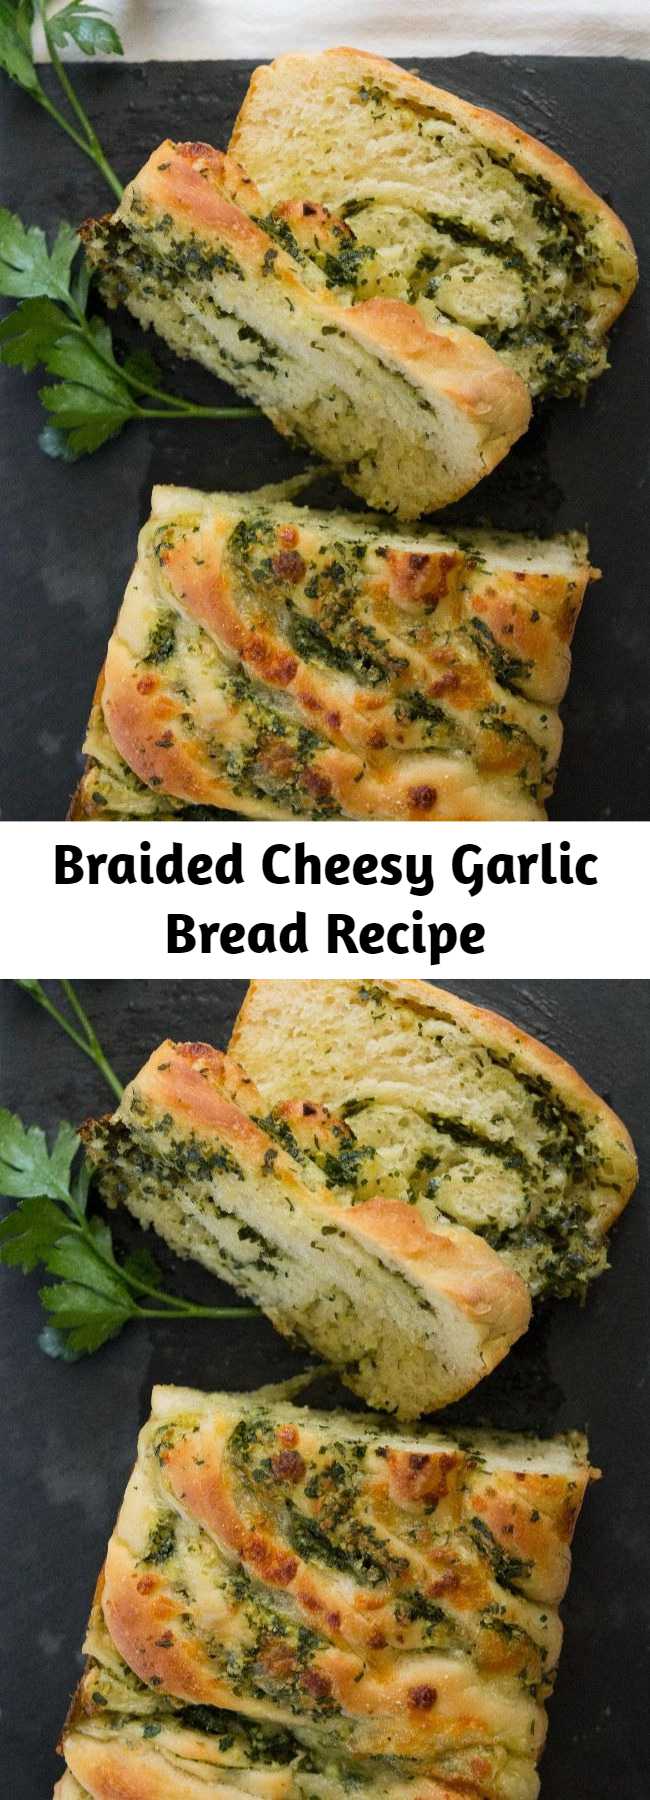 Braided Cheesy Garlic Bread Recipe - Classy AF.